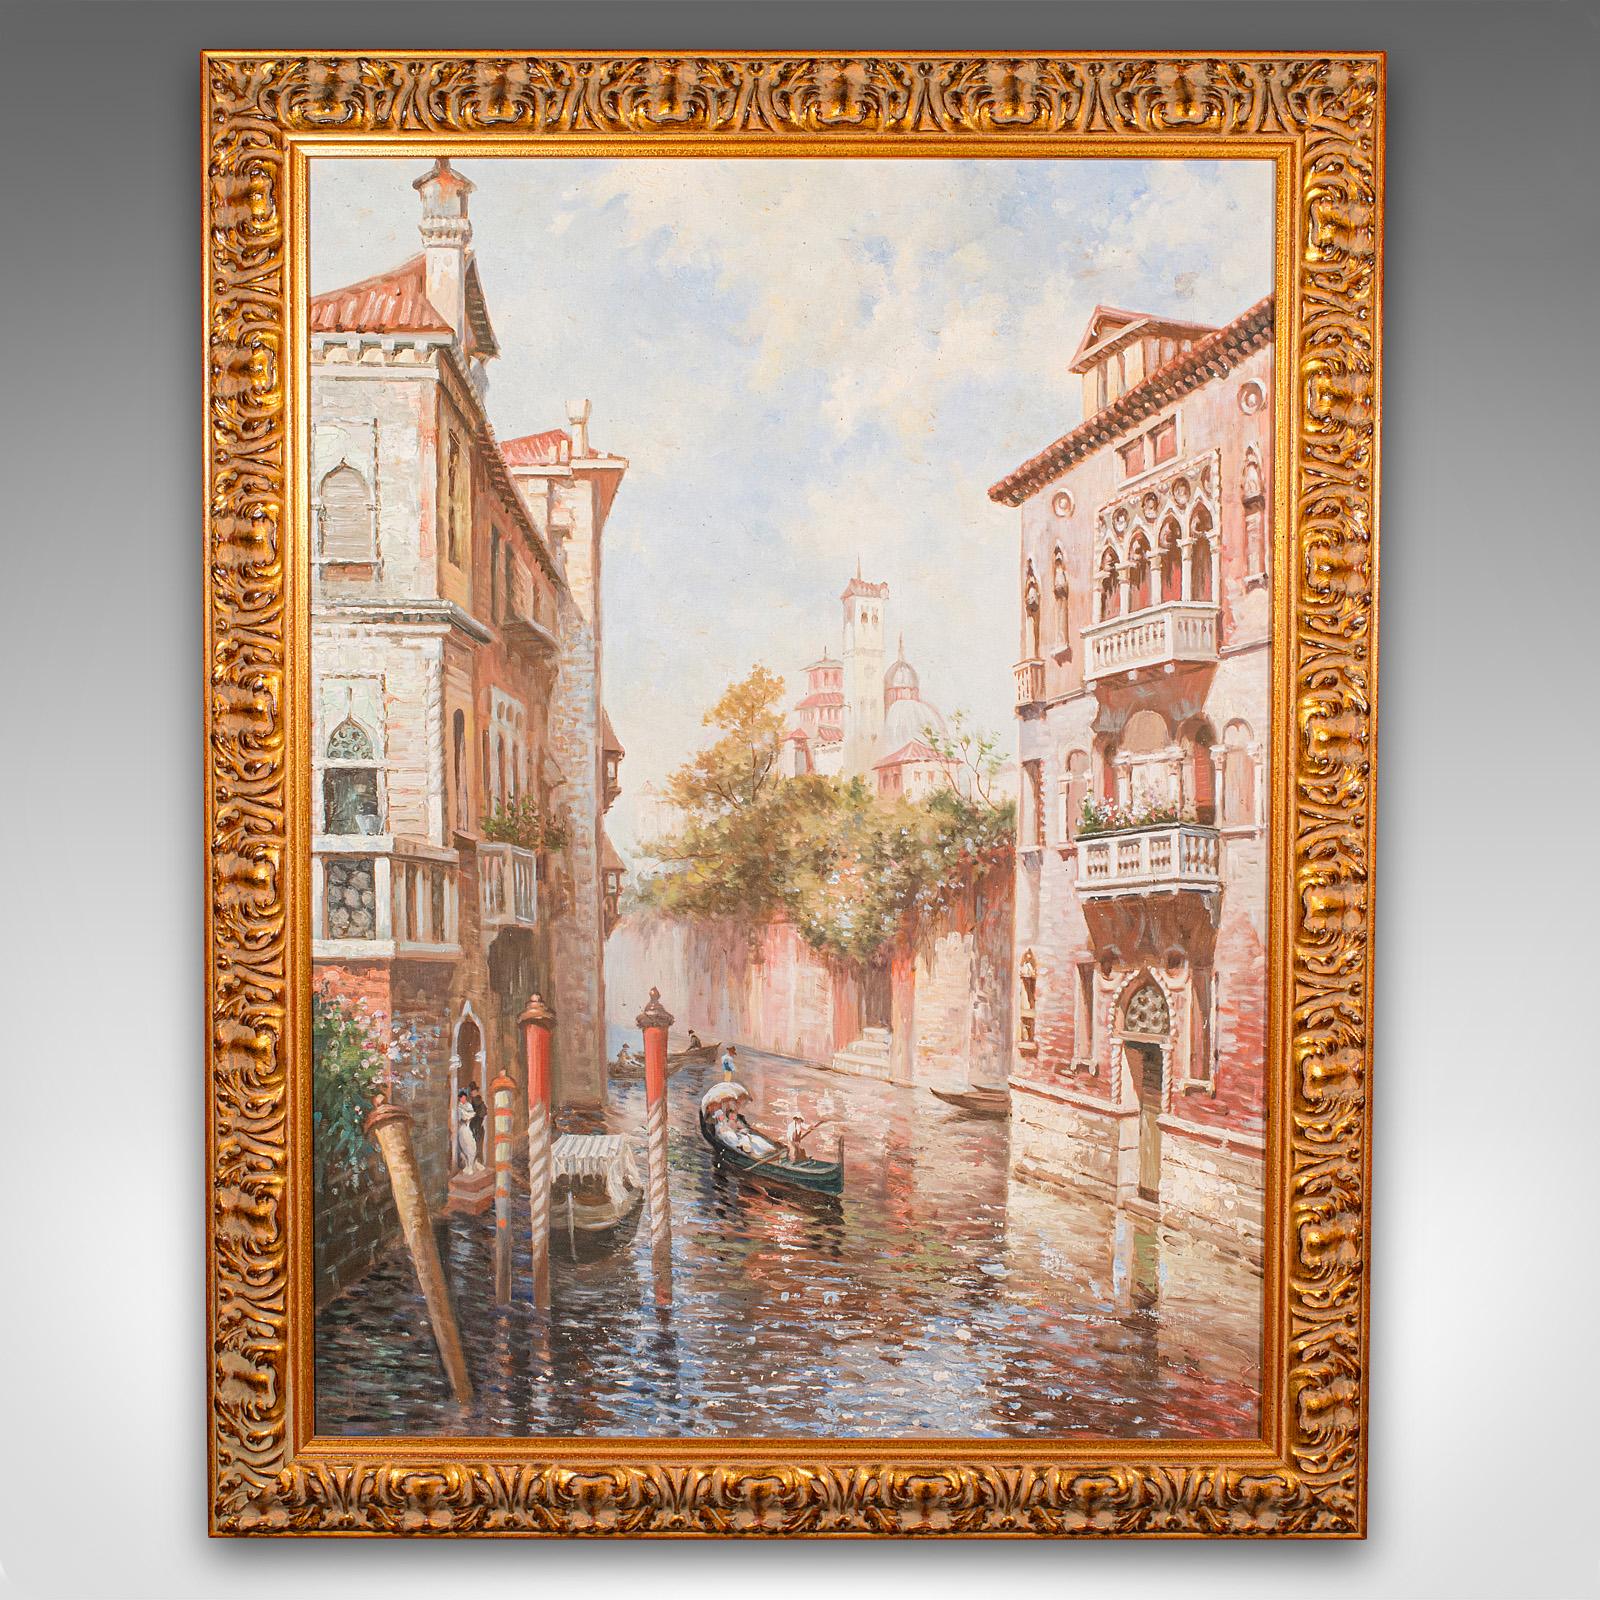 Dies ist ein großes venezianisches Gemälde im Vintage-Stil. Eine kontinentale Studie von Venedig in Öl auf Leinwand, aus dem späten 20. Jahrhundert, um 1980.

Ein venezianisches Vergnügen - in wunderbaren Farben festgehalten und in einem schönen